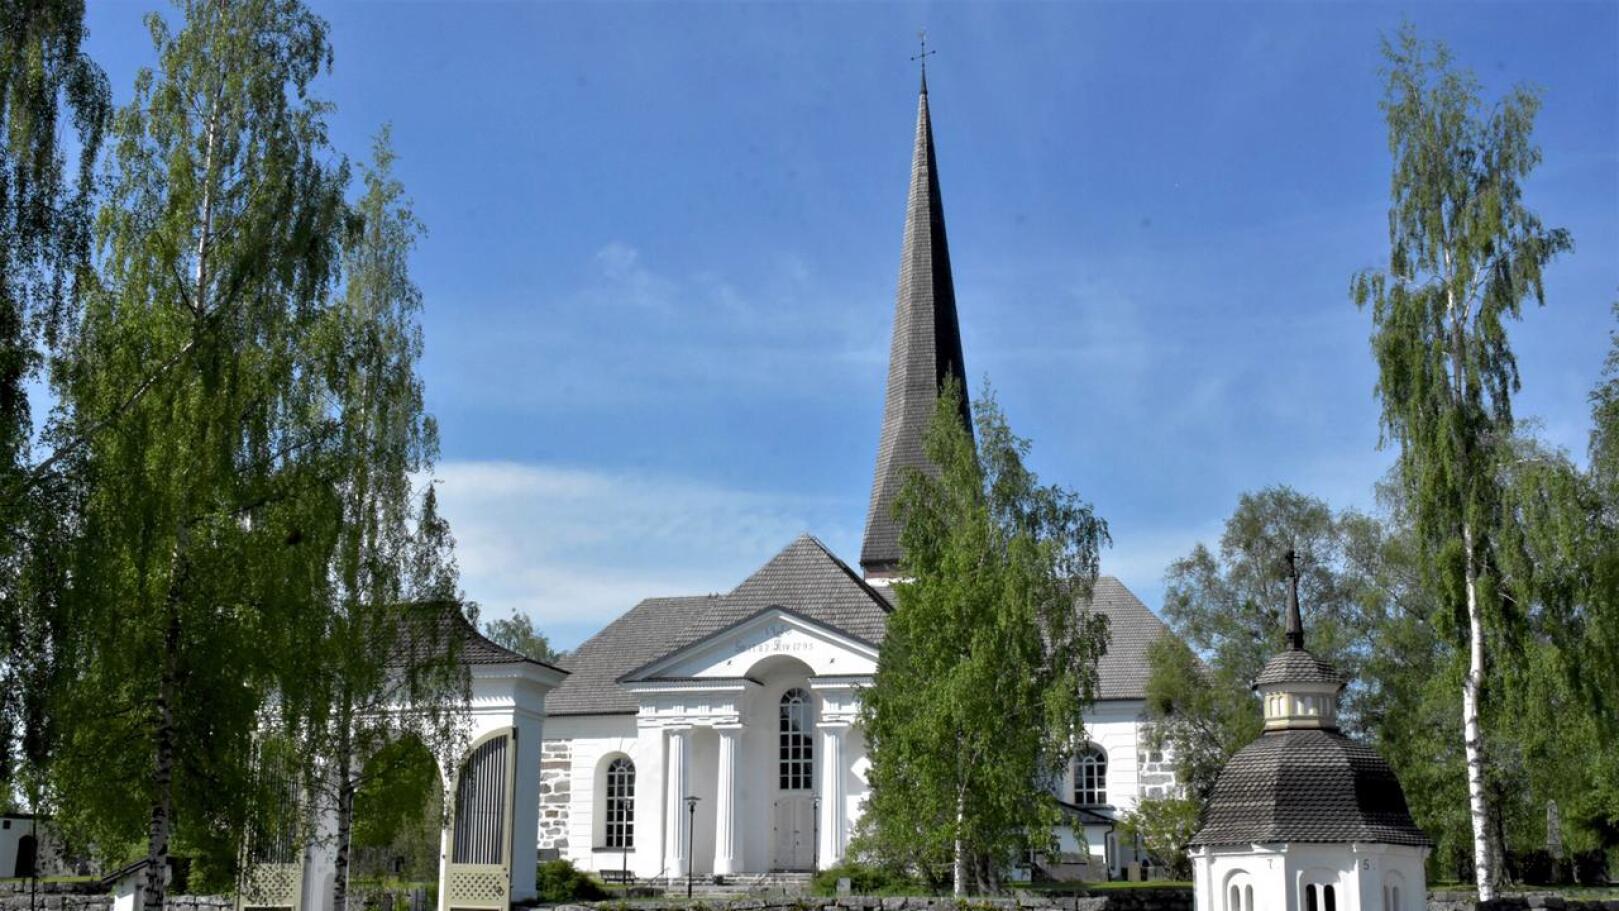 Pedersören uusi kirkkoherra on valittu. Kuvituskuva Pedersören kirkosta.